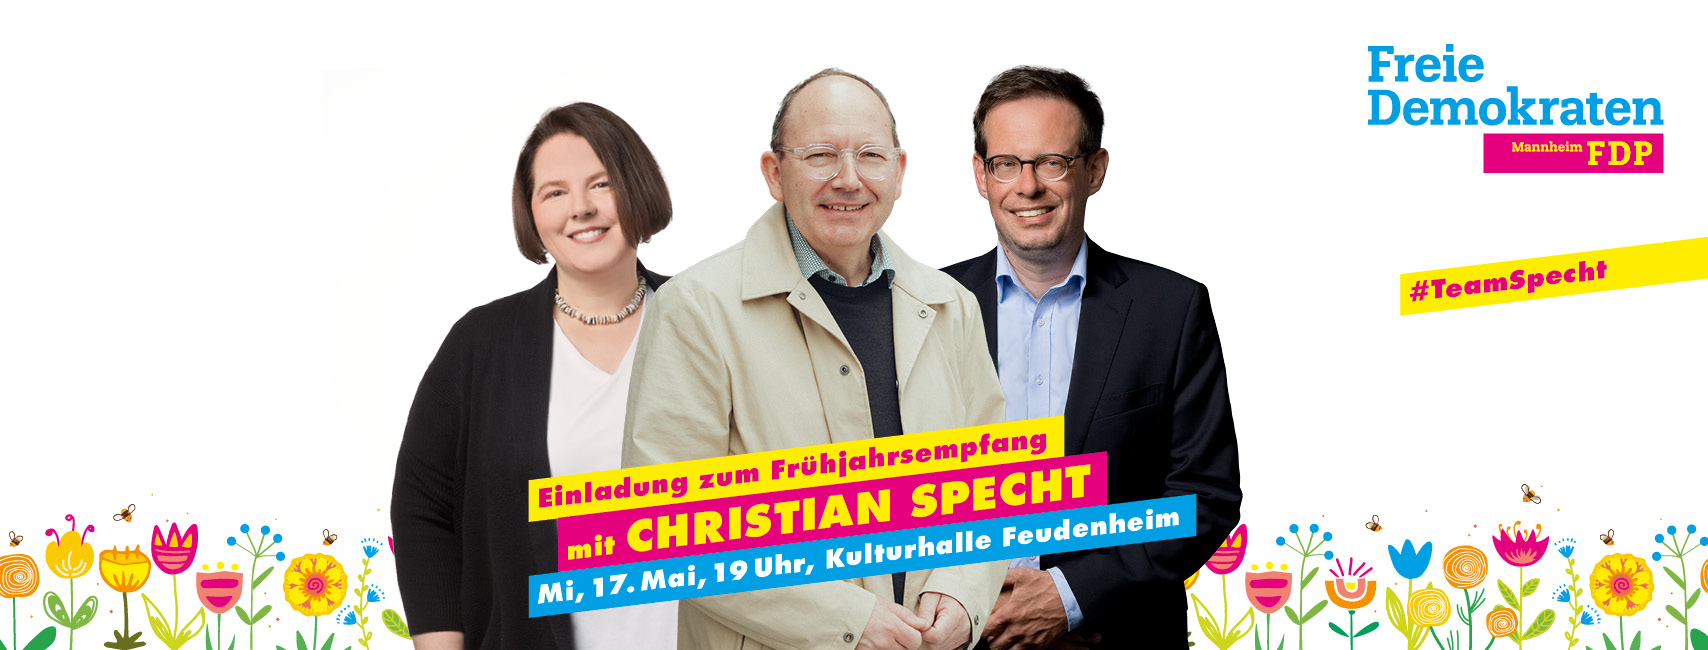 Einladung zum Frühjahrsempfang mit unserem OB-Kandidaten Christian Specht am 17. Mai um 19 Uhr in der Kulturhalle Feudenheim